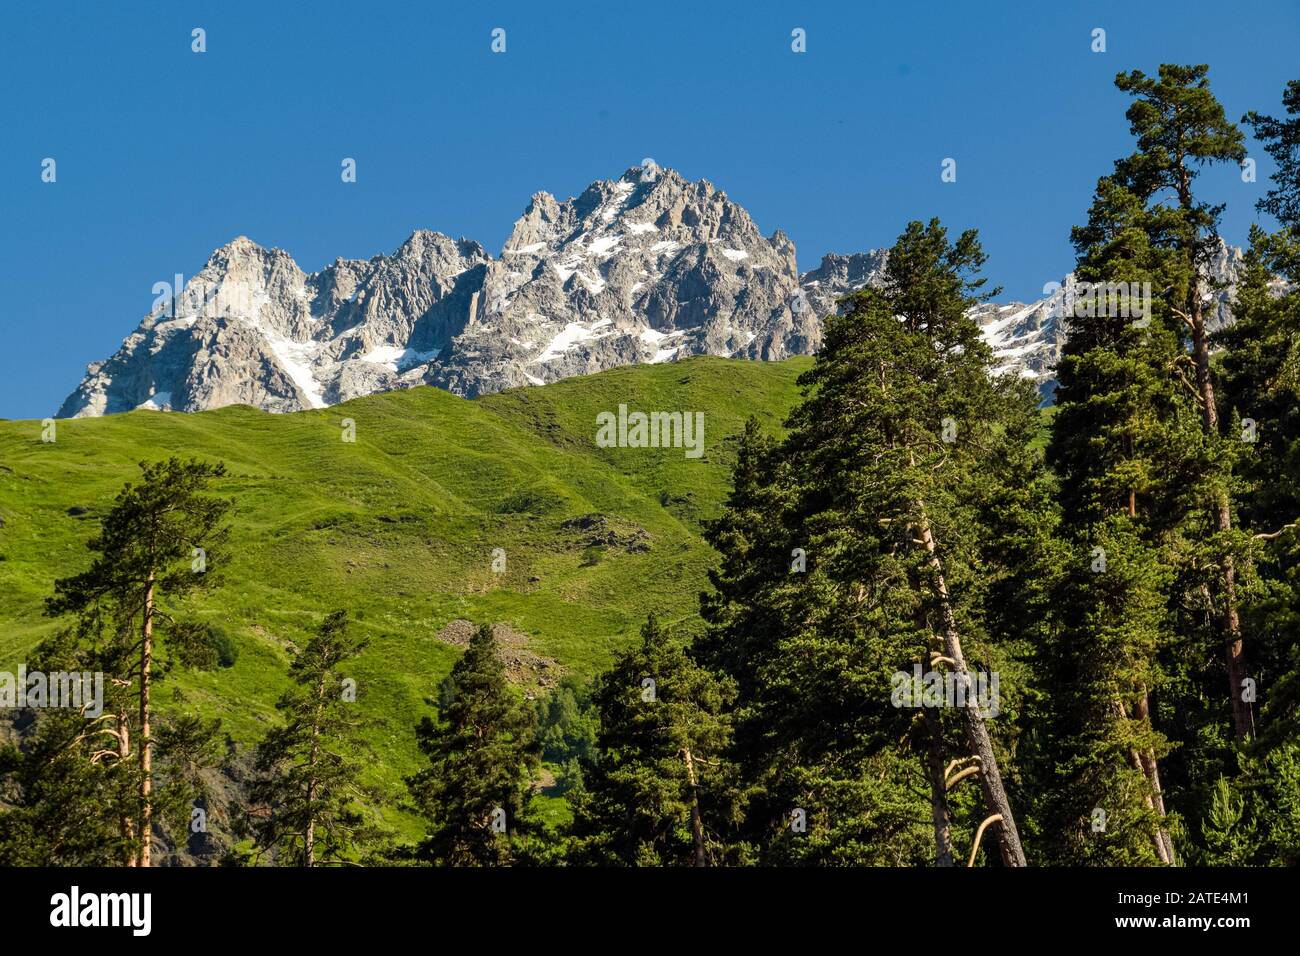 Cresta rocosa del monte Ushba que se muestra detrás de los pinos y las laderas de hierba de las zonas altitudinales inferiores de las montañas del Cáucaso. Svaneti, Georgia. Foto de stock